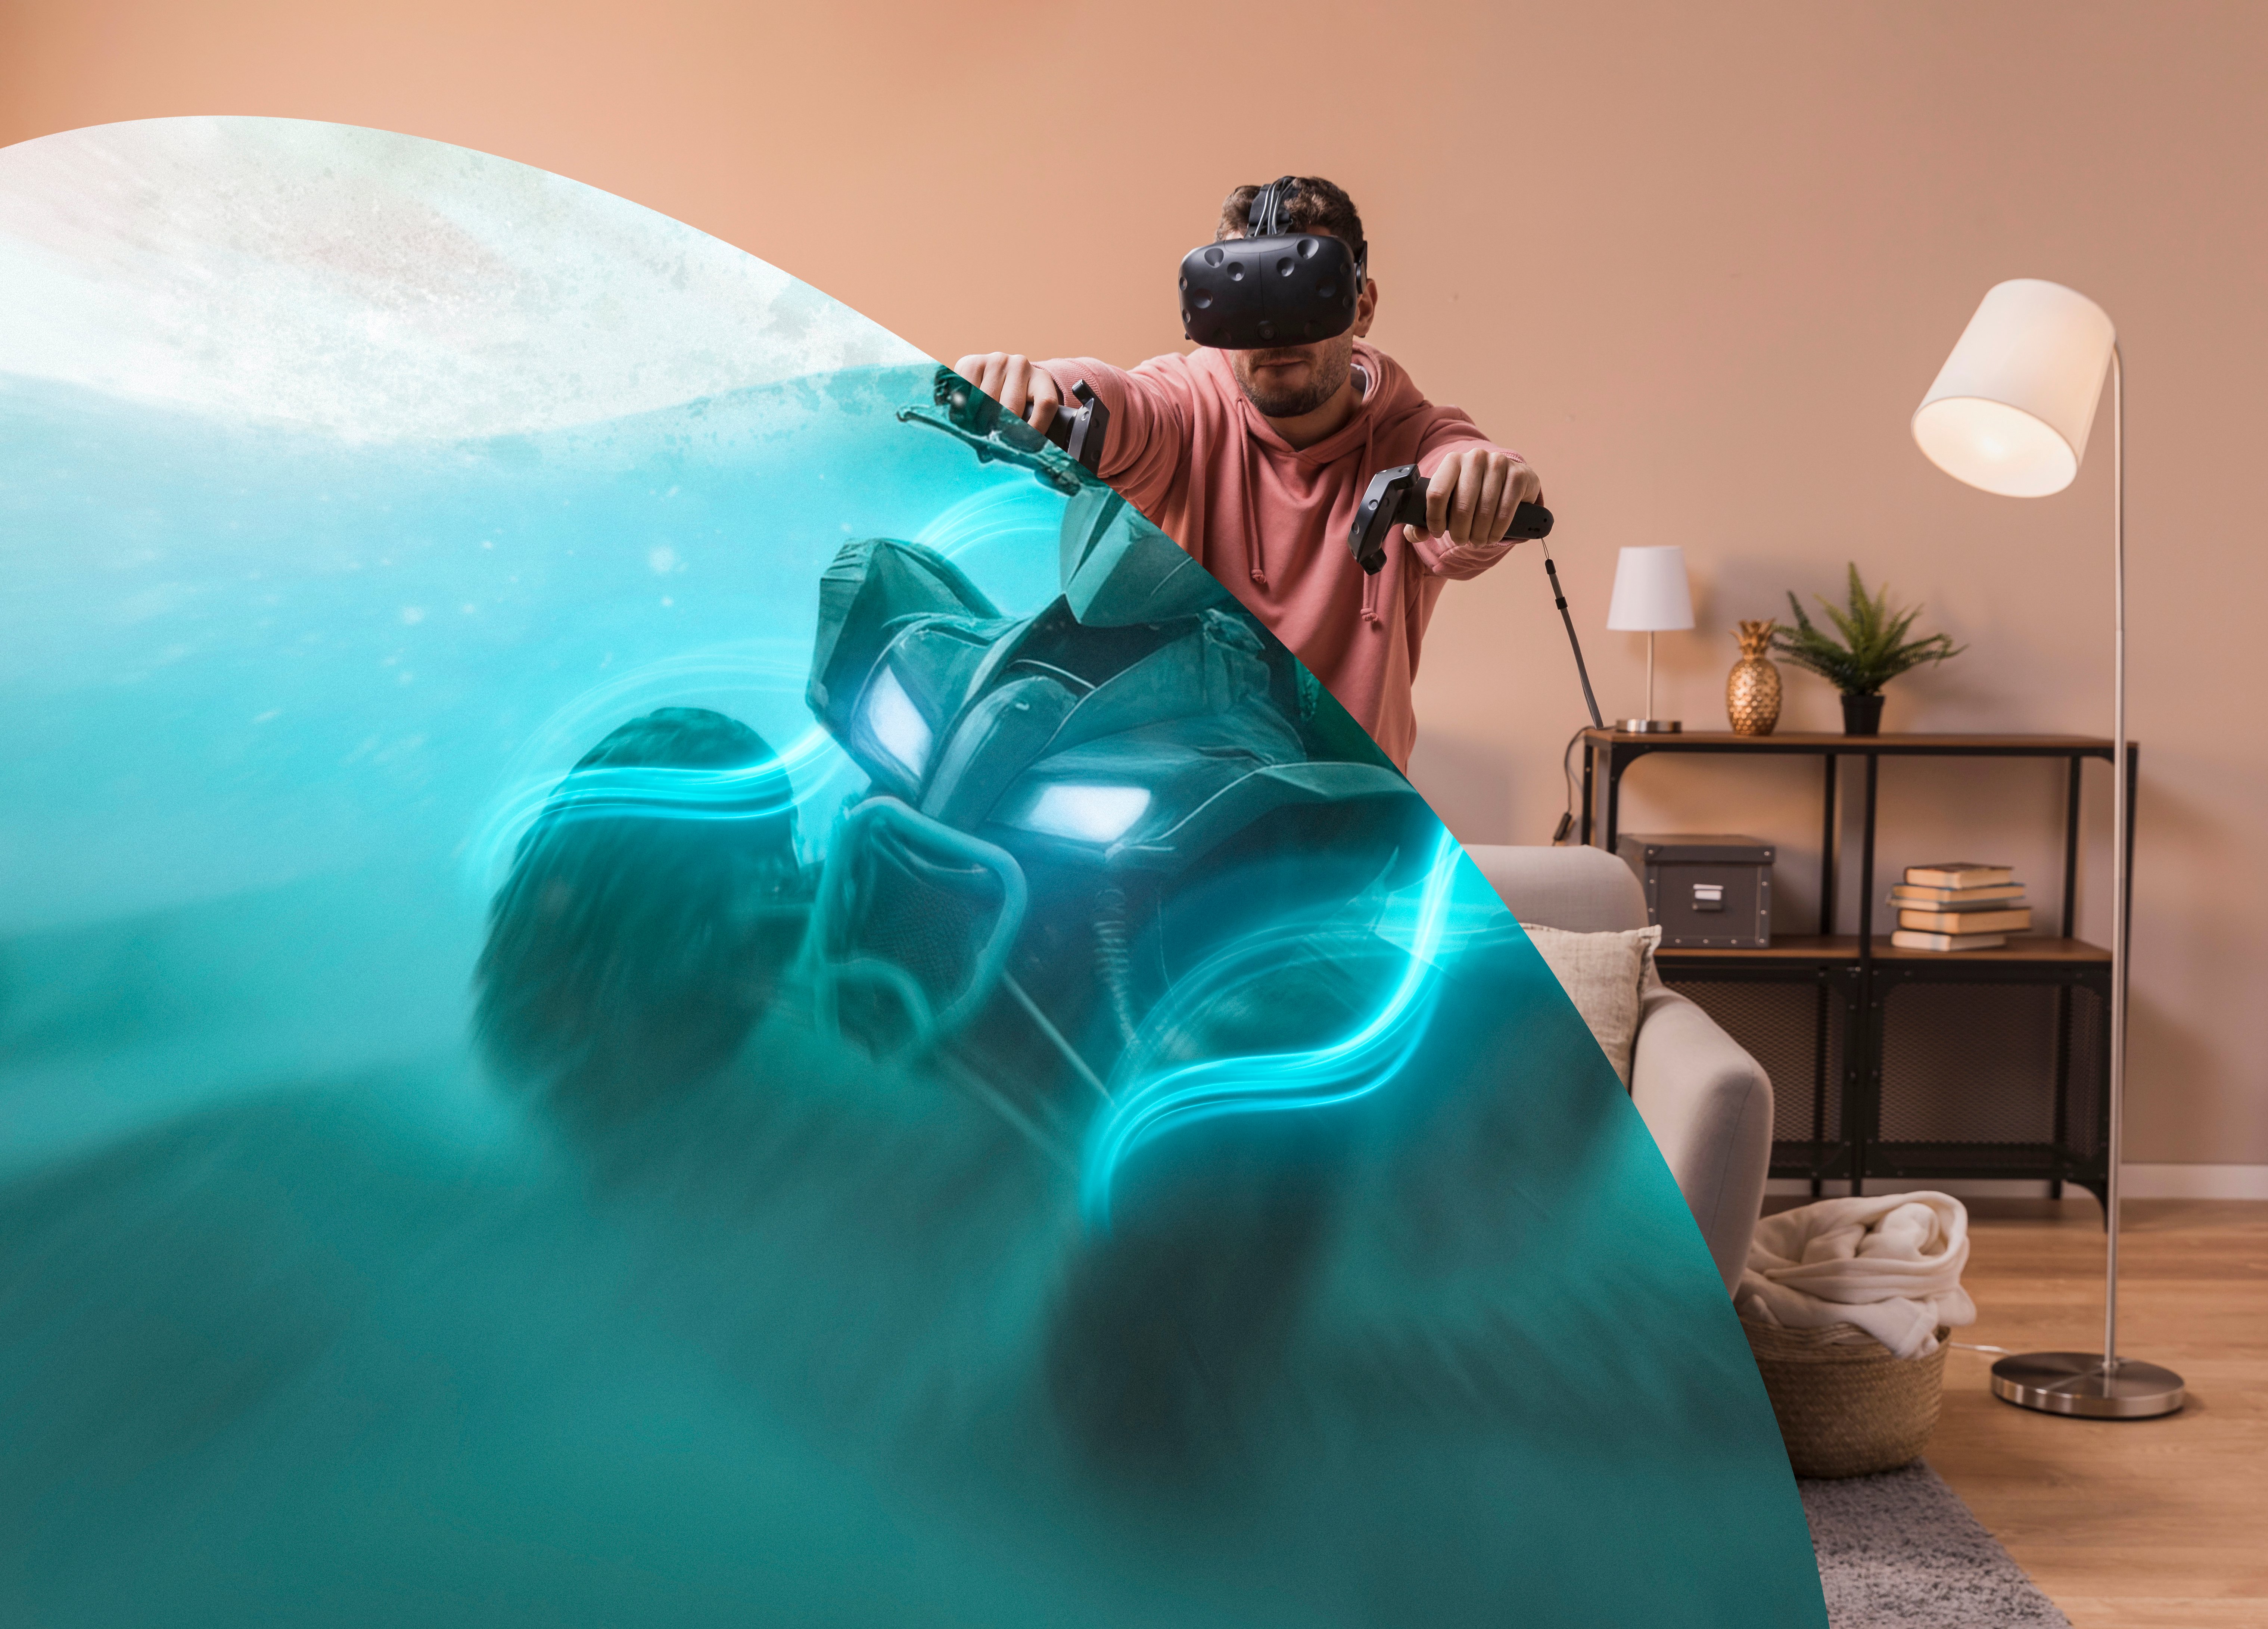 Imagem de um homem usando equipamento de Realidade Virtual, enquanto joga um jogo de corrida de quadriciclos, e sua sala de estar.